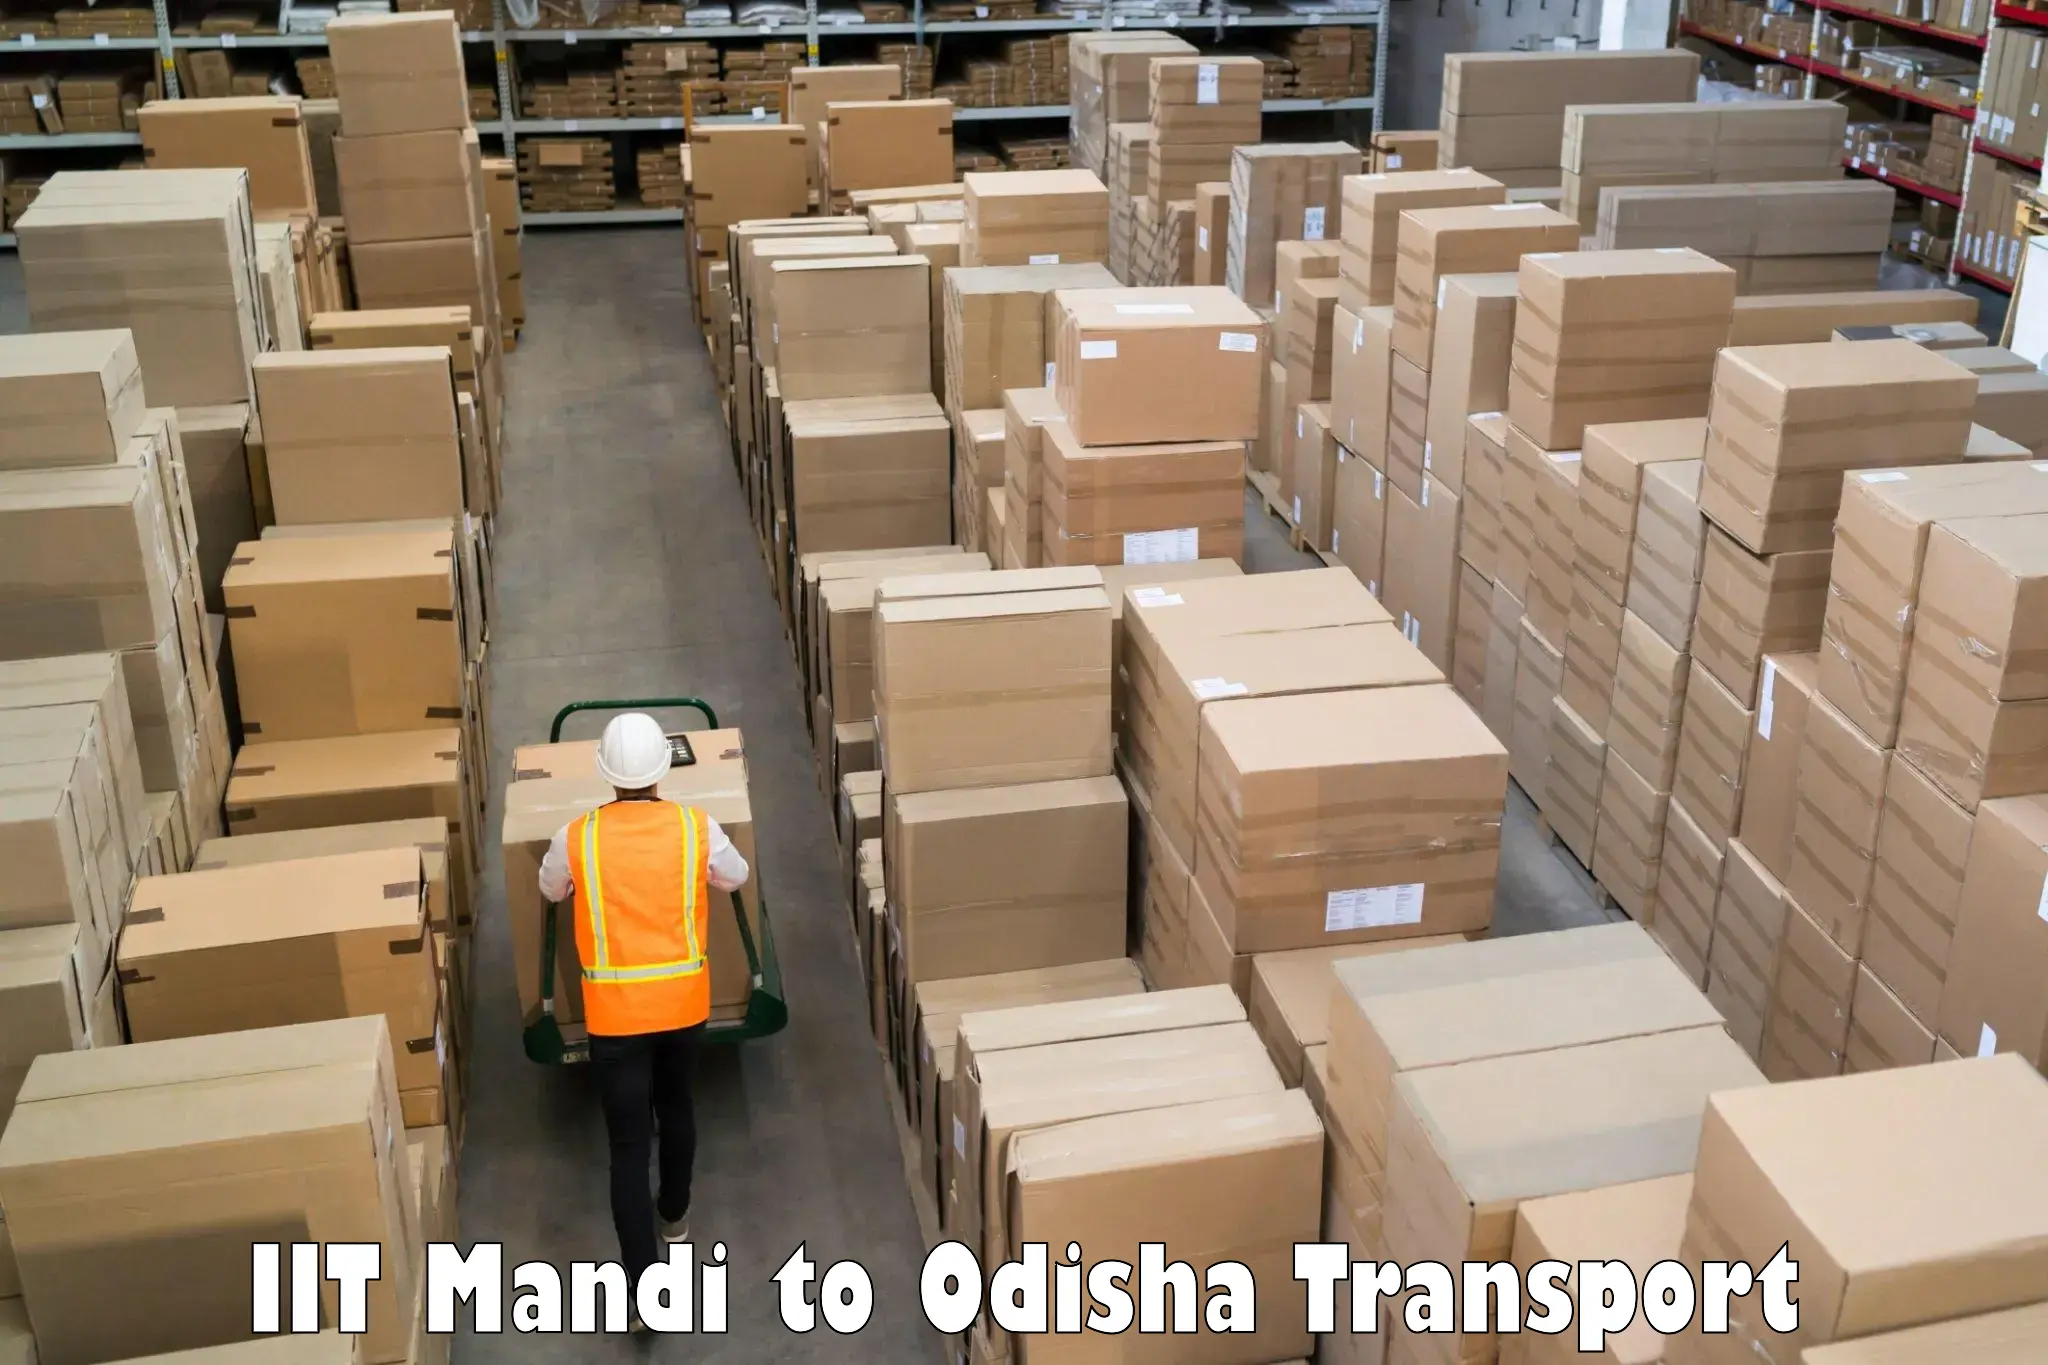 Daily transport service IIT Mandi to Champua